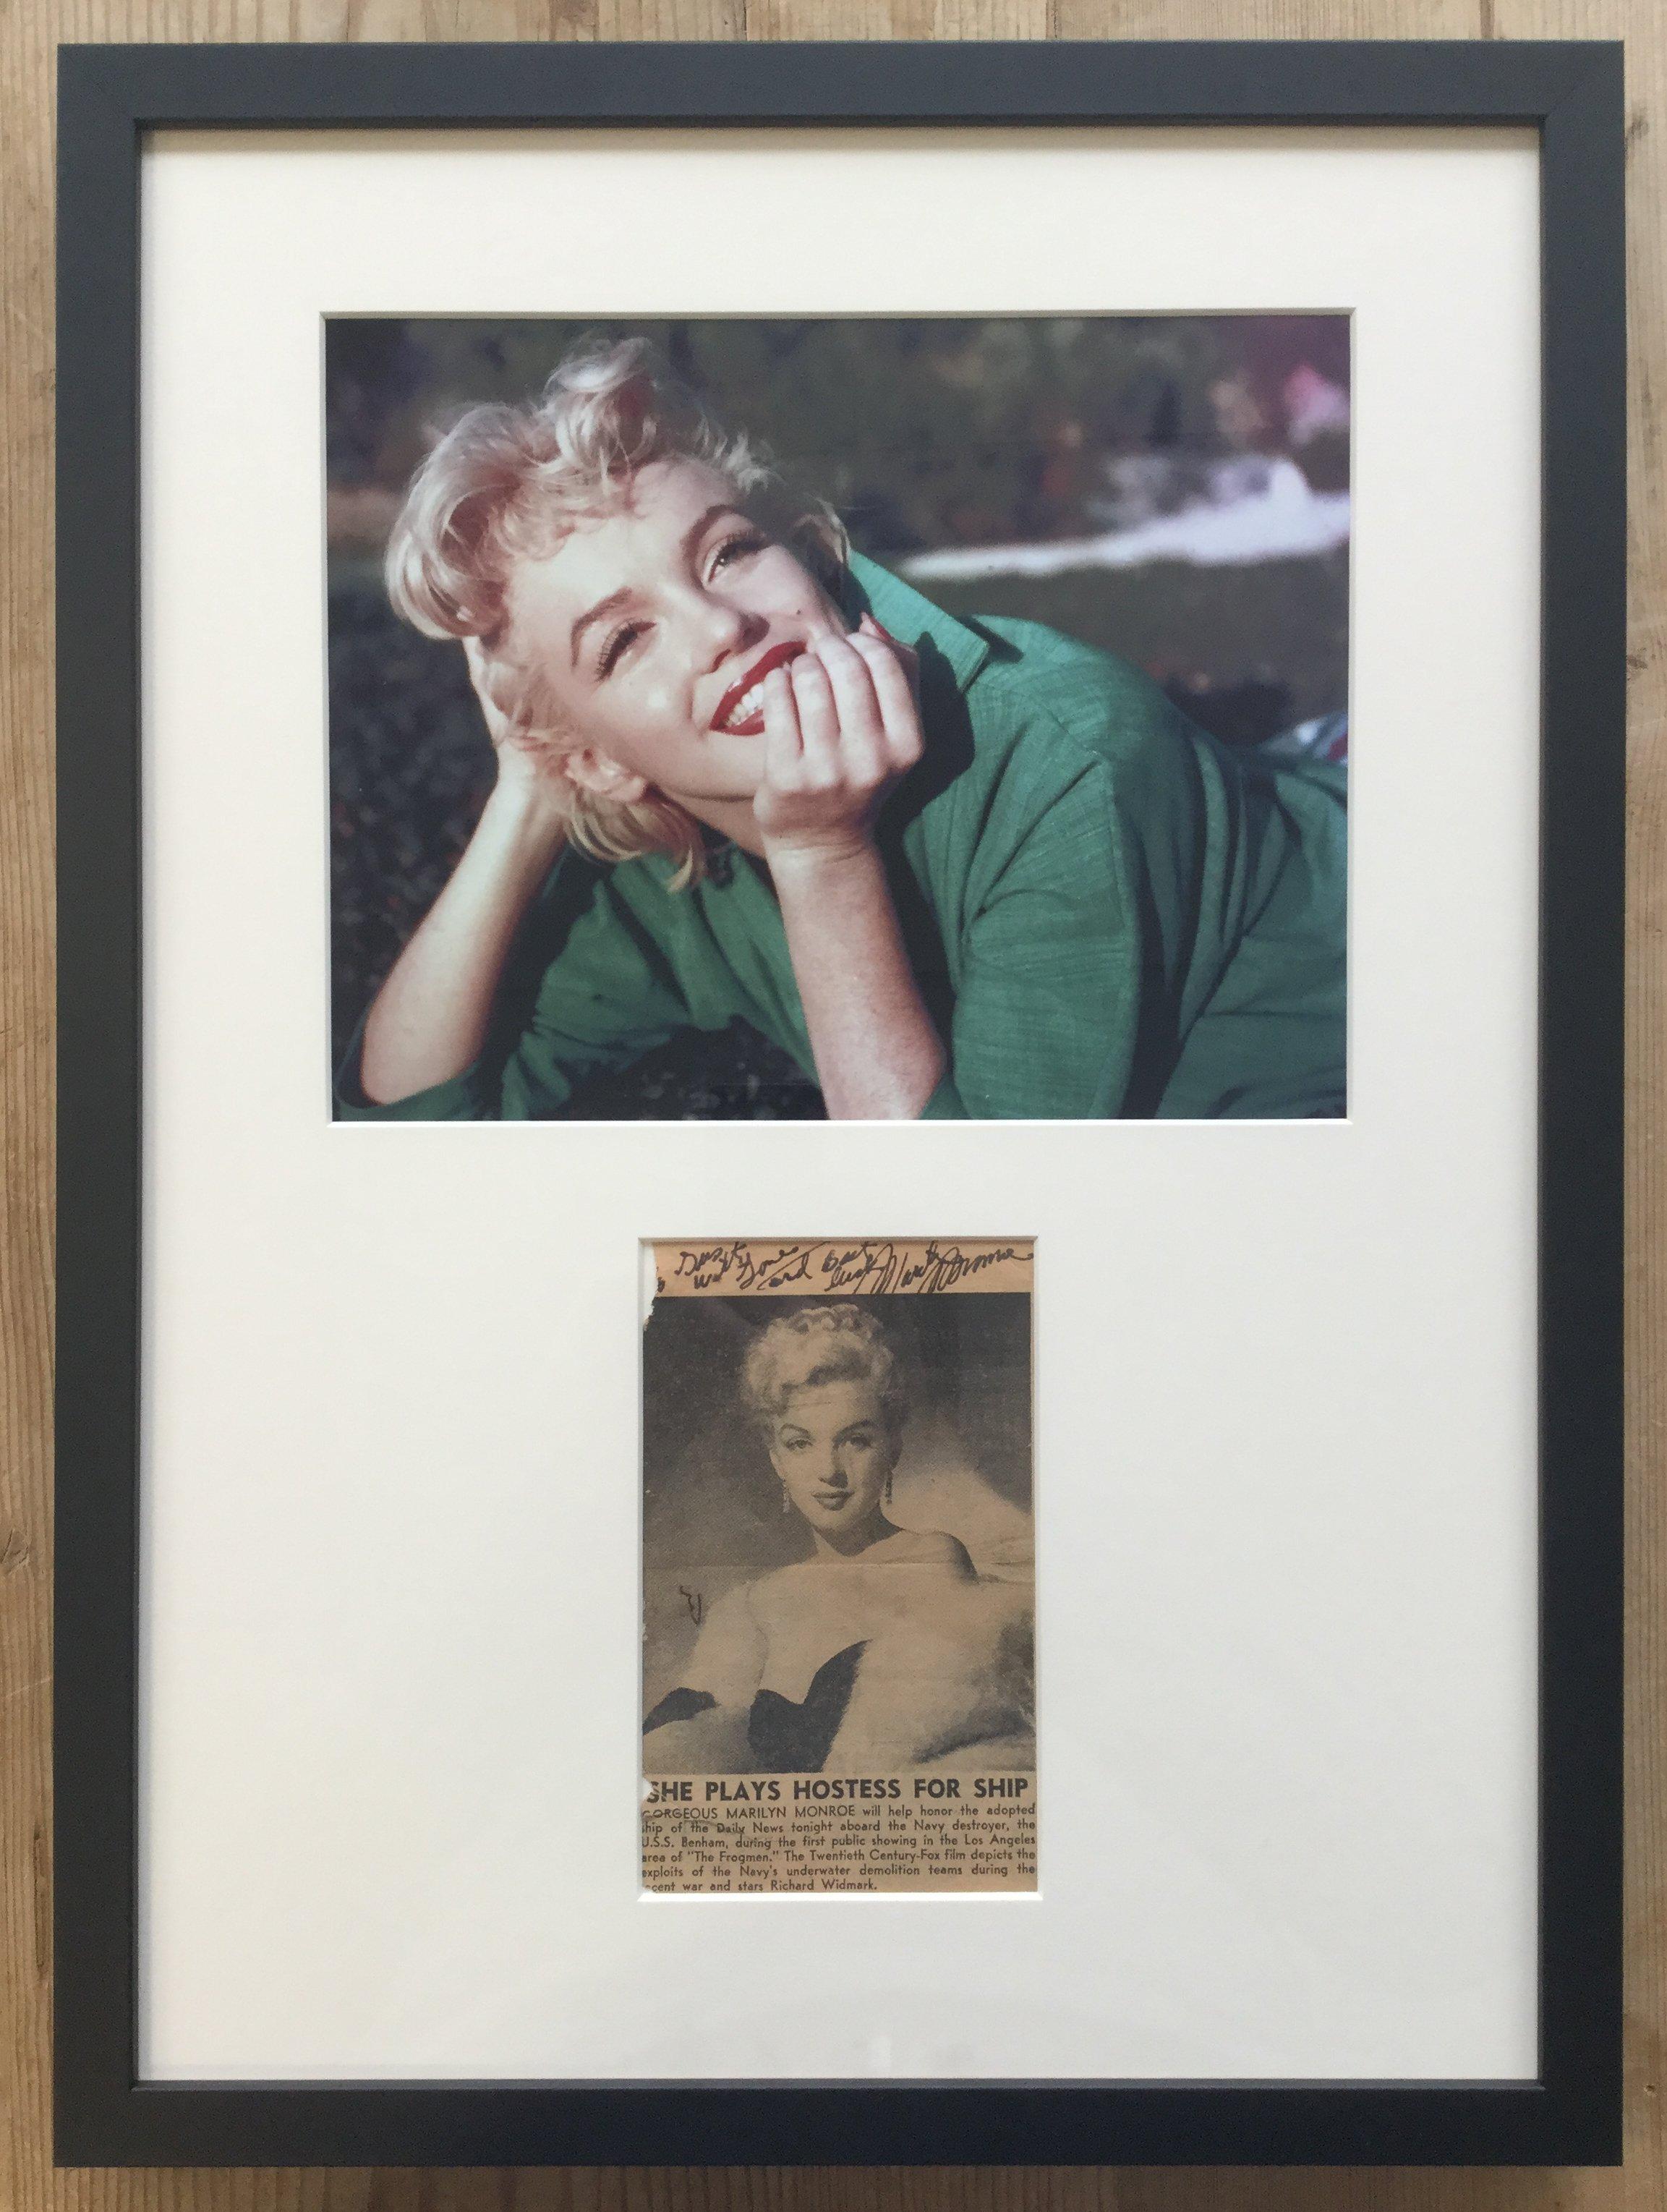 Marilyn Monroe autographe sur une coupure de presse

Signé le 19 juin 1951 pour un militaire de l'US Navy - superbe provenance

Encadrement attrayant en verre de conservation filtrant les UV

Marilyn Monroe (1926-1962) n'a plus besoin d'être